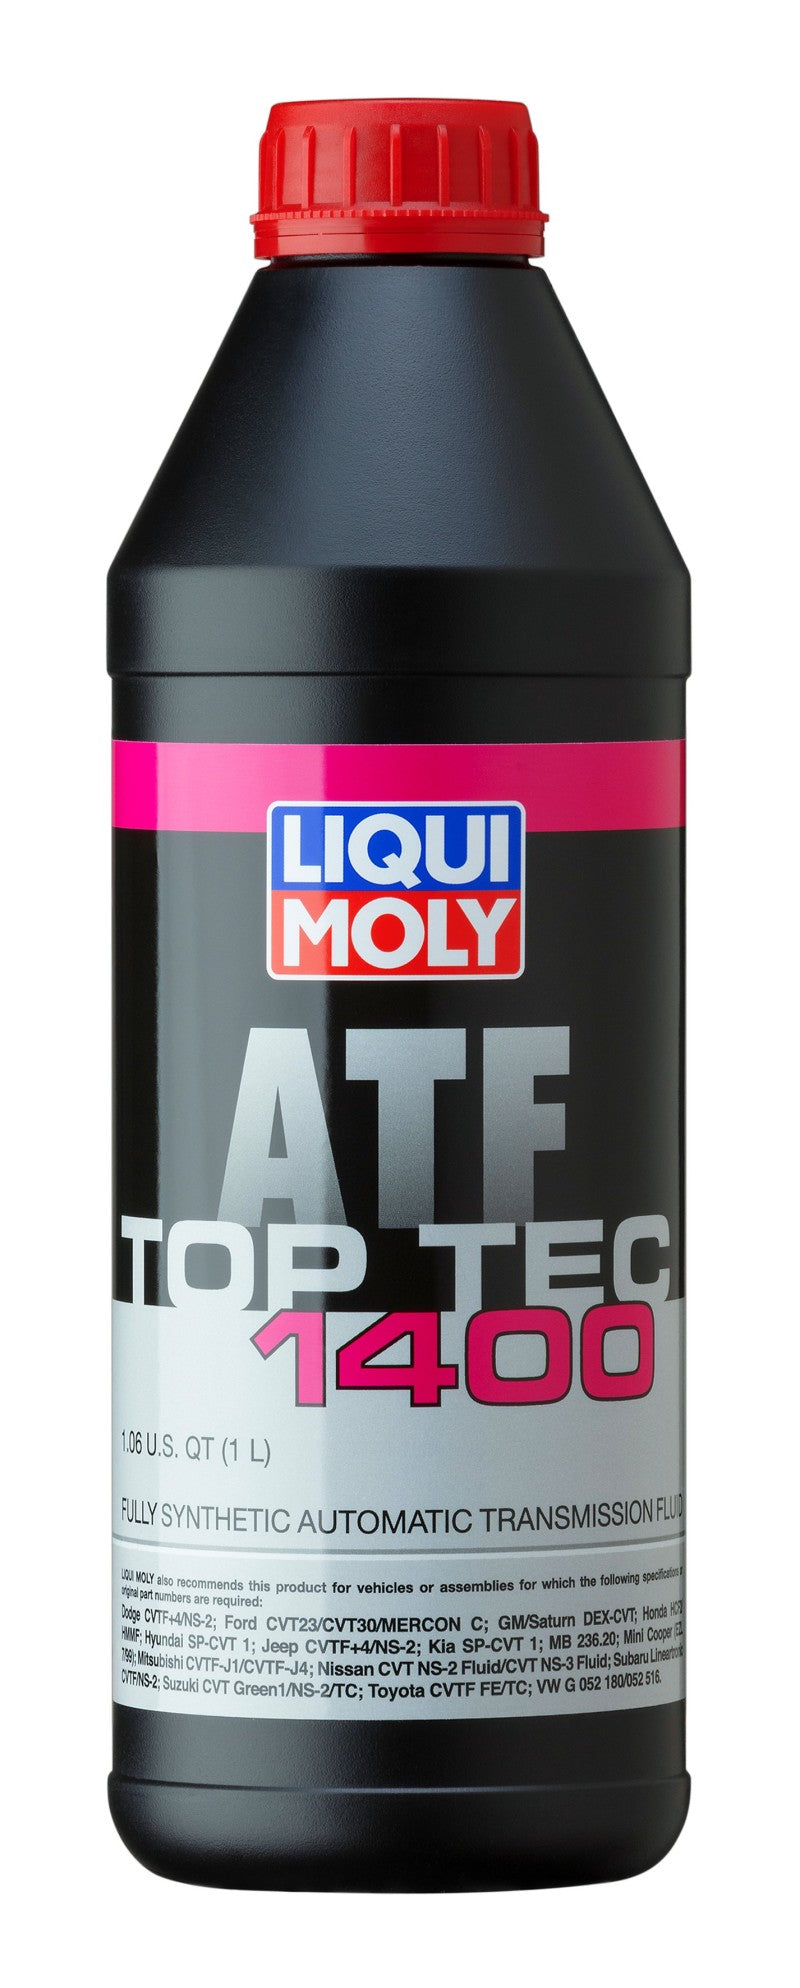 LIQUI MOLY 1L Top Tec ATF 1400 -  Shop now at Performance Car Parts